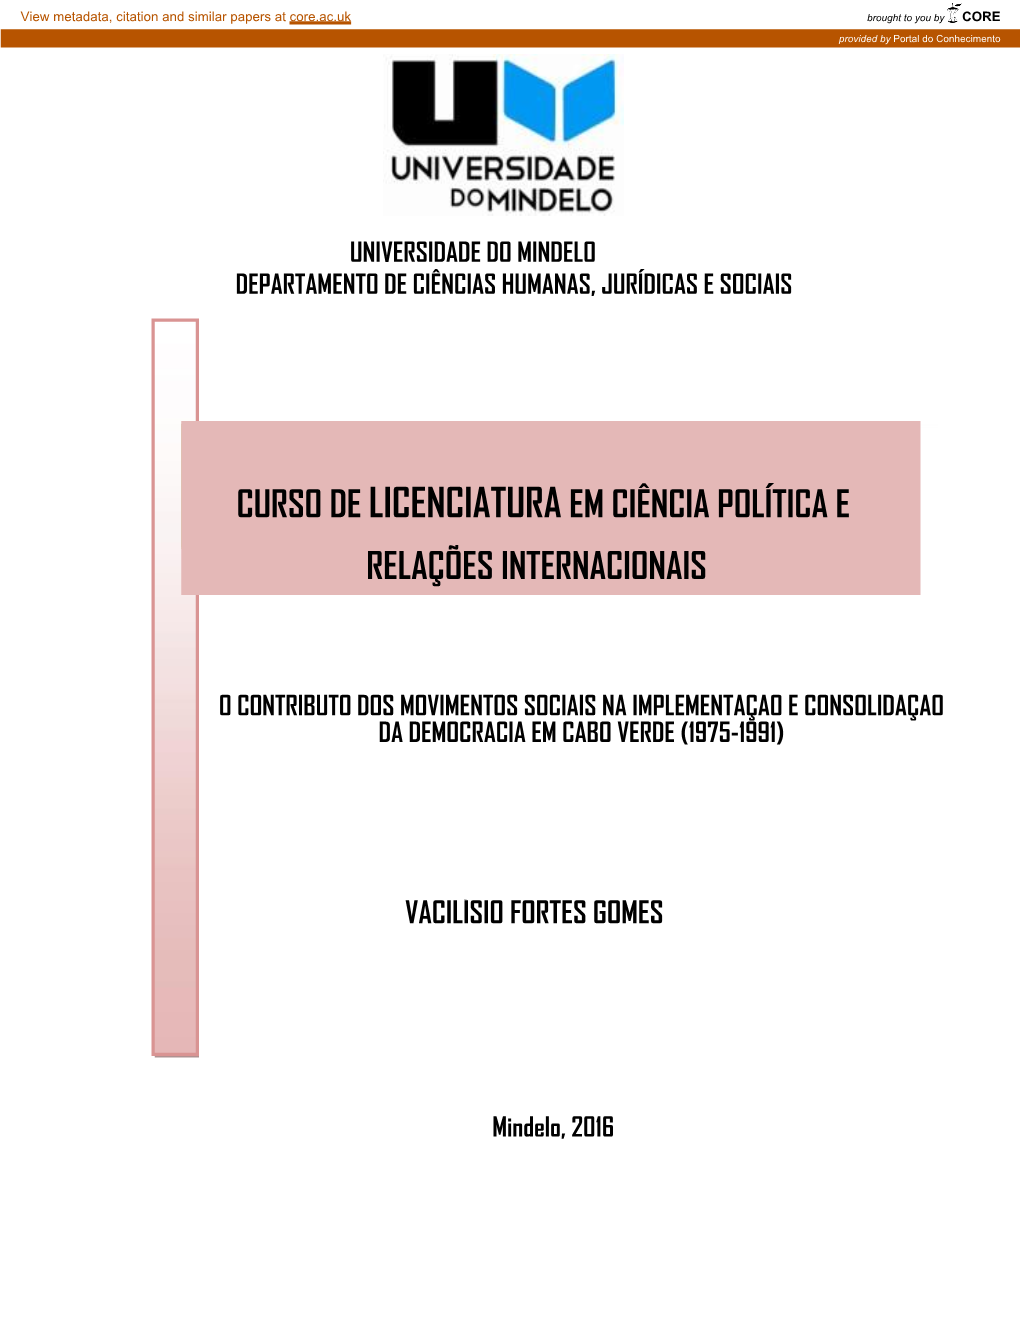 O Contributo Dos Movimentos Sociais Na Implementação E Consolidação Da Democracia Em Cabo Verde (1975-1991)